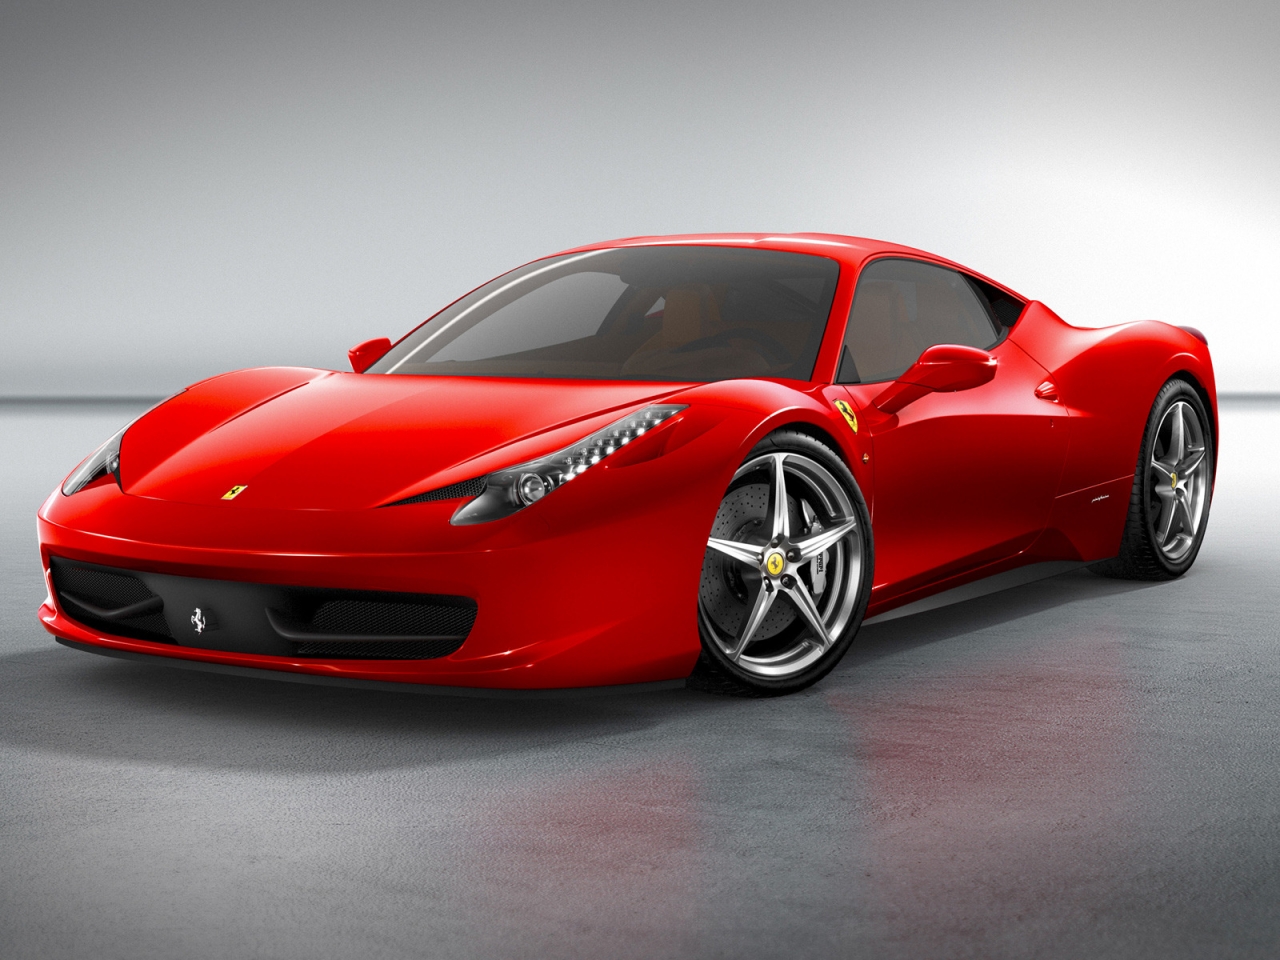 Ferrari 458 Italia Front for 1280 x 960 resolution